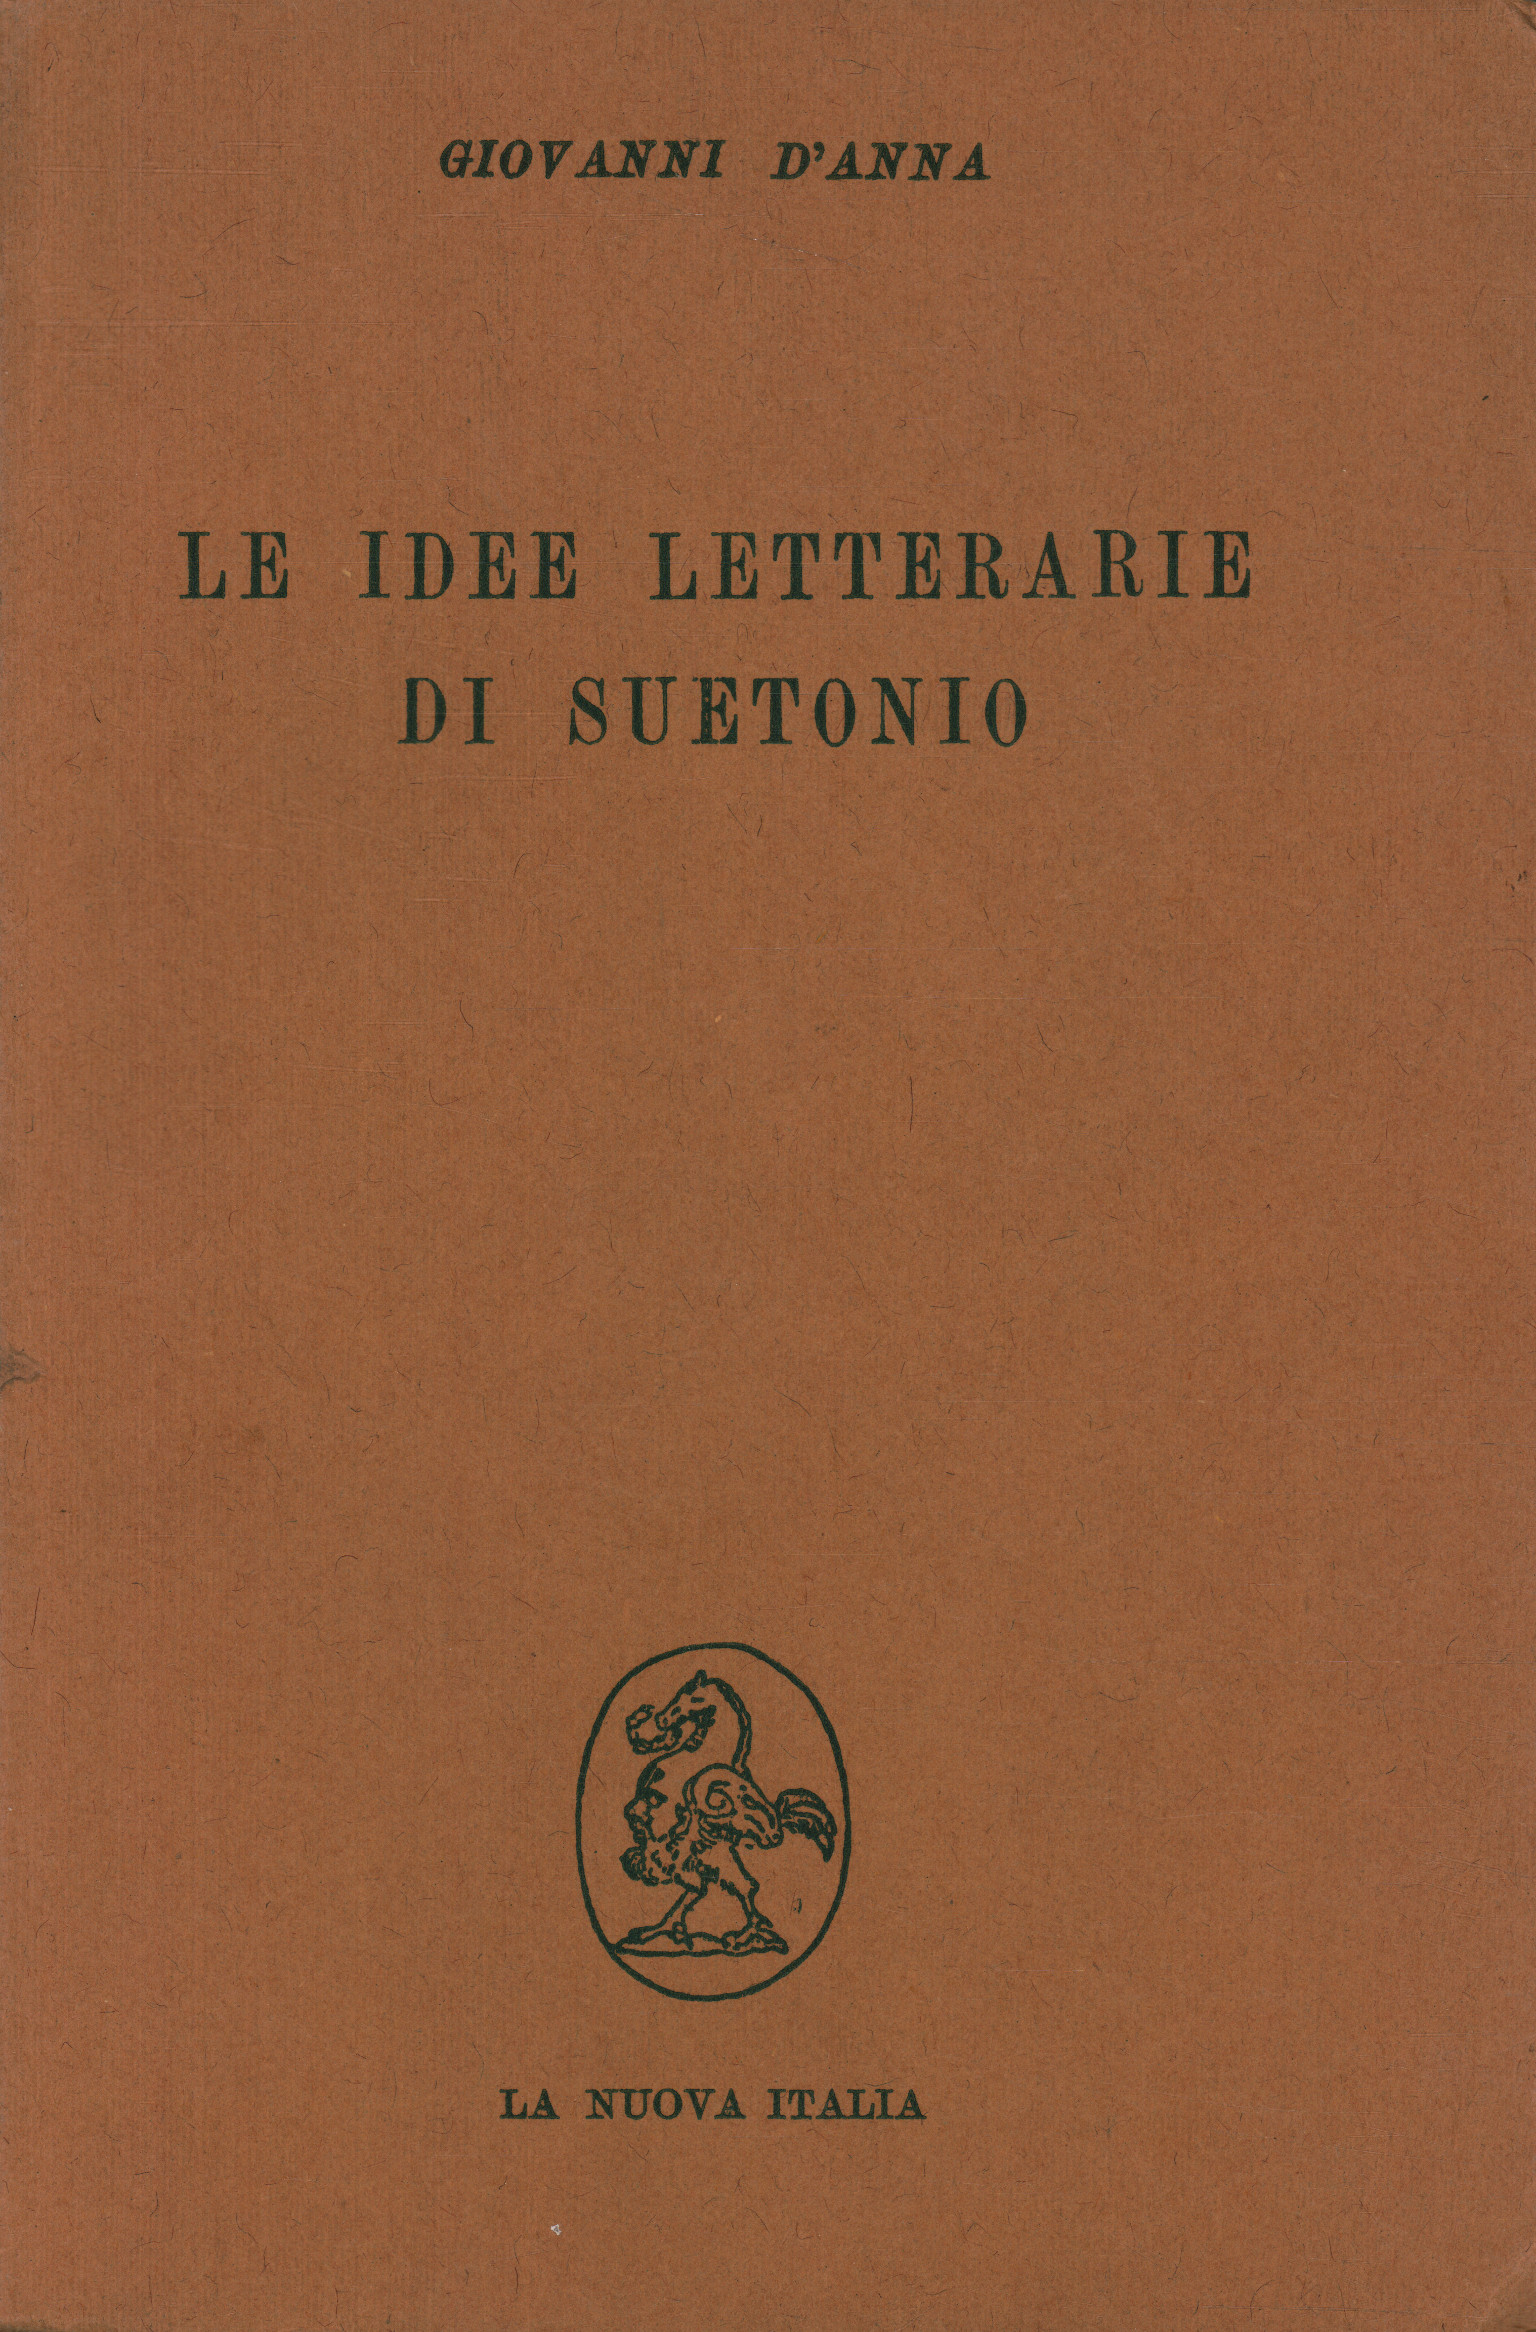 Suetonius' literary ideas